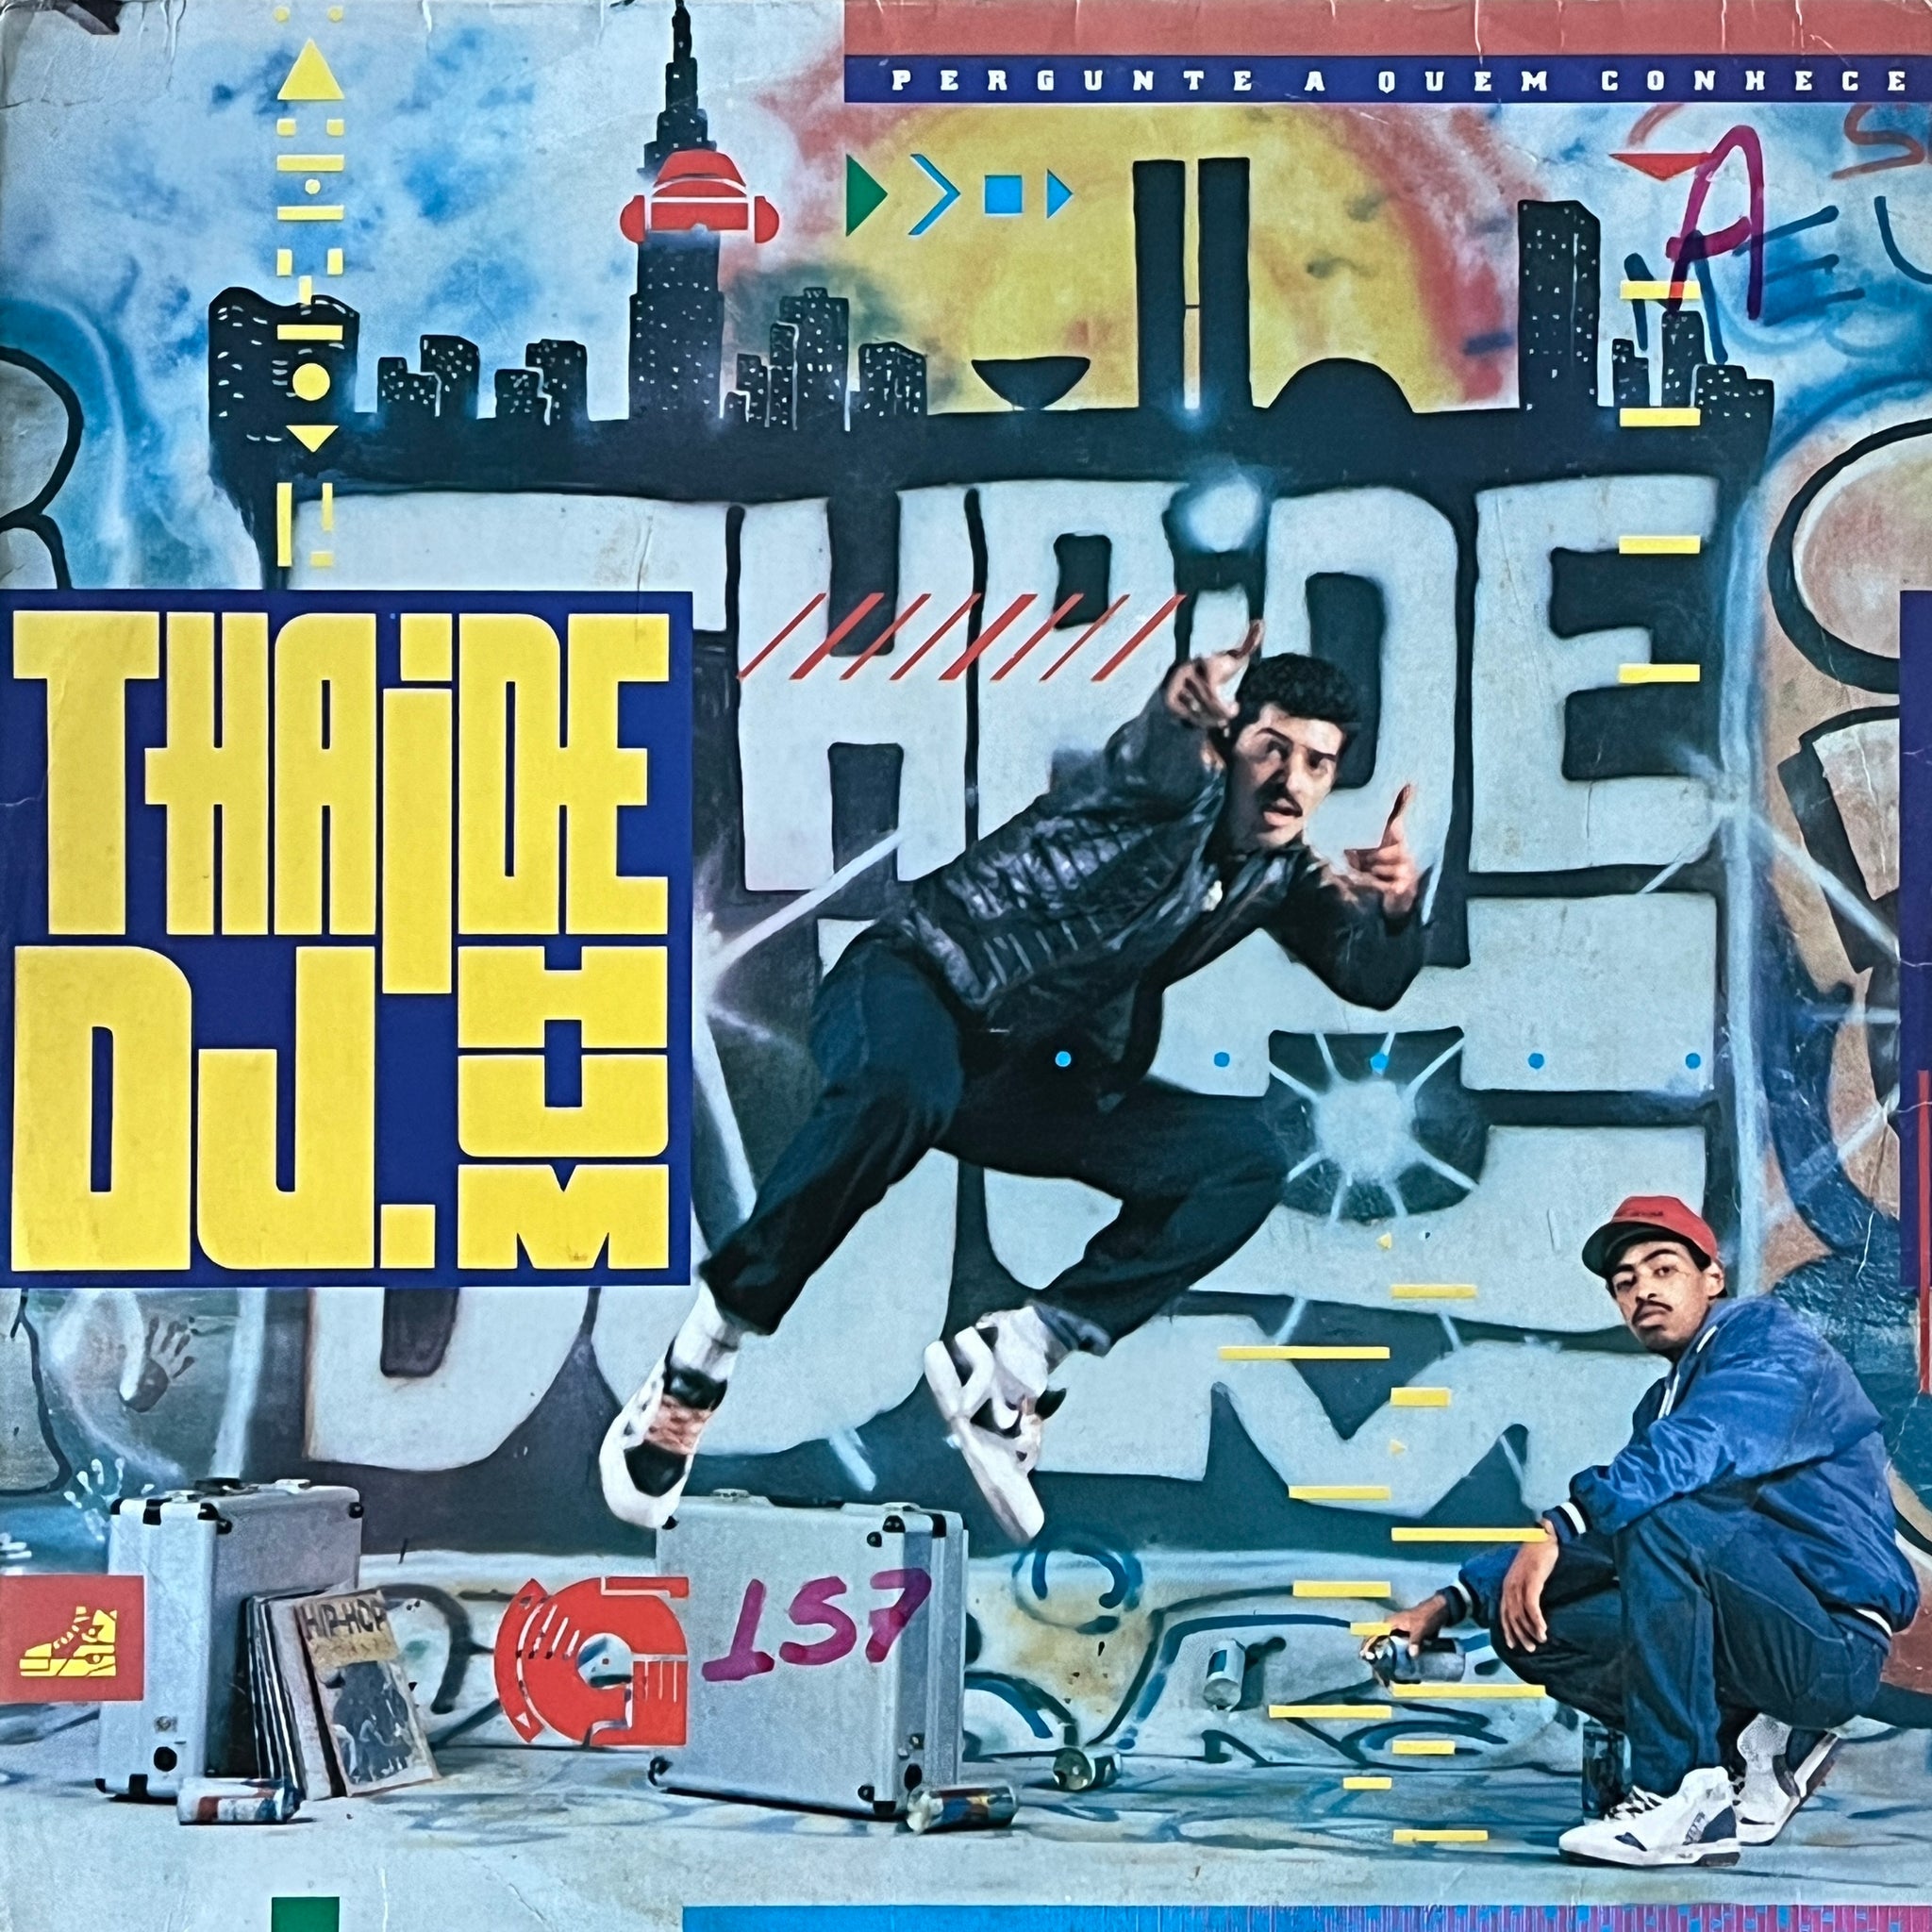 Thaide & DJ Hum ‎– Pergunte A Quem Conhece